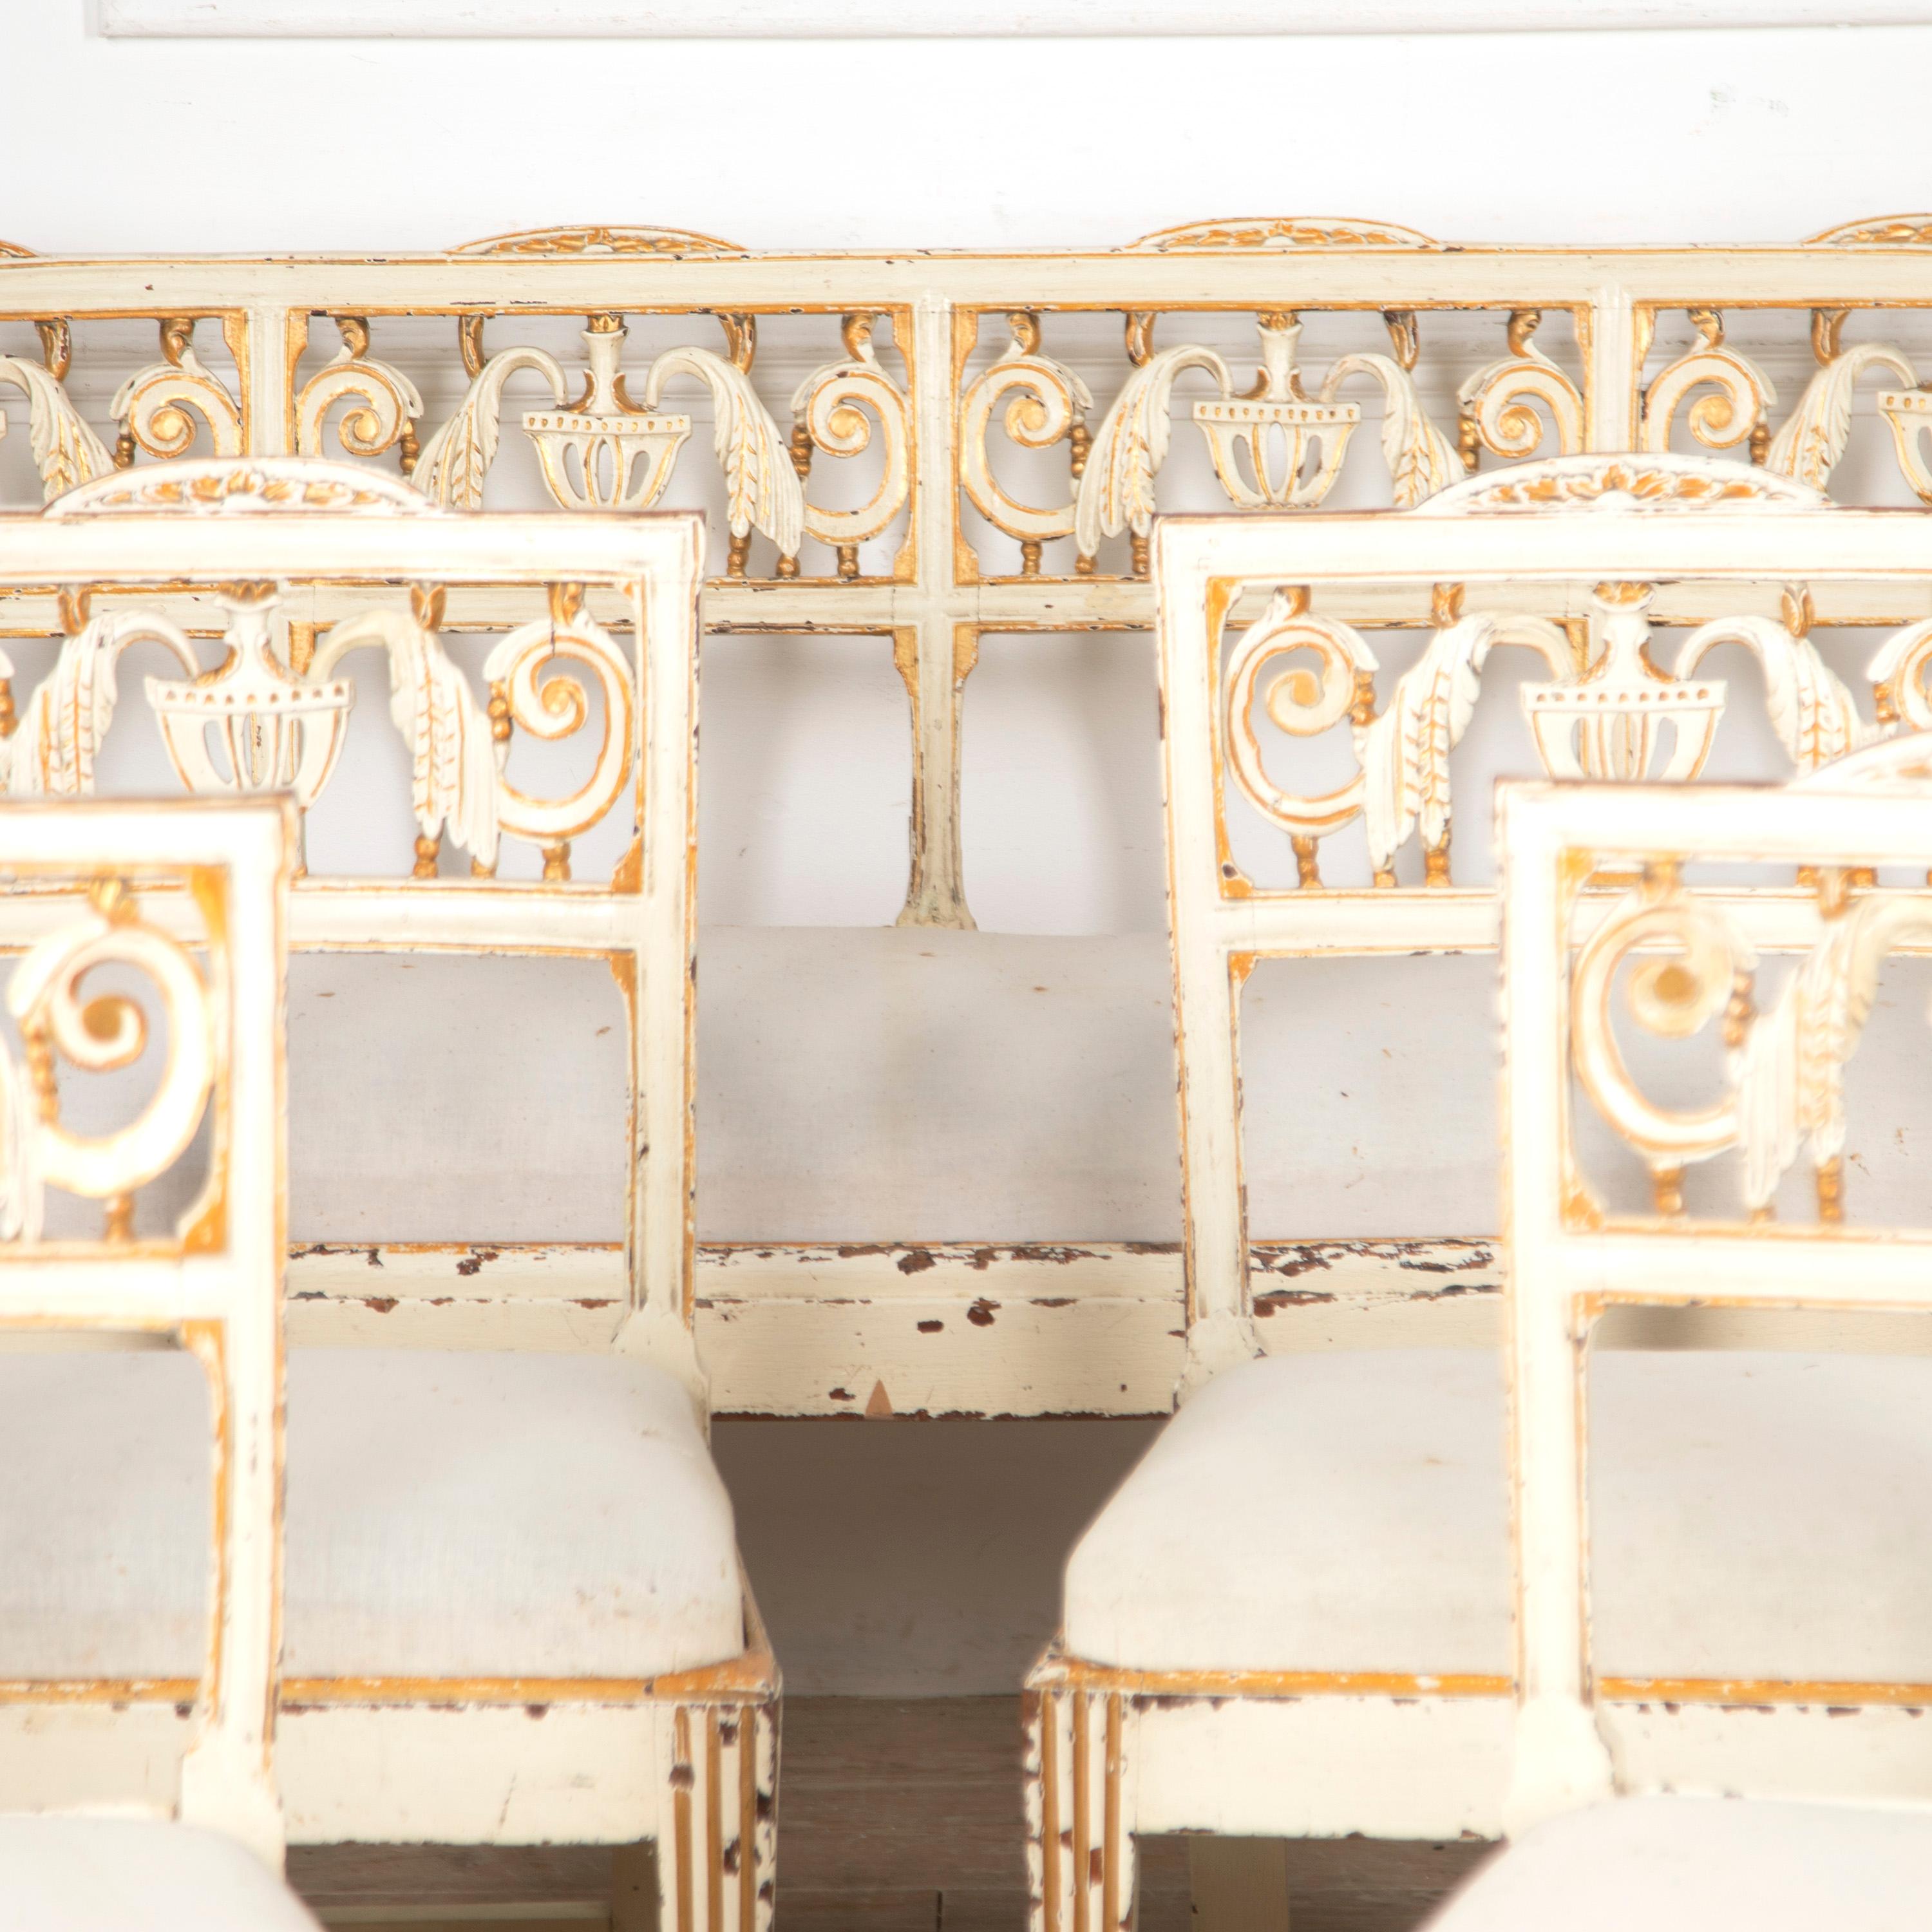 Dekorativer Satz von acht bemalten venezianischen Esszimmerstühlen und -bank aus dem 18. Jahrhundert. 

Dieses wunderbare Set hat einen großen Charme und eine großartige Geschichte. Die Stühle und die Bank stammen ursprünglich aus einem Palazzo in